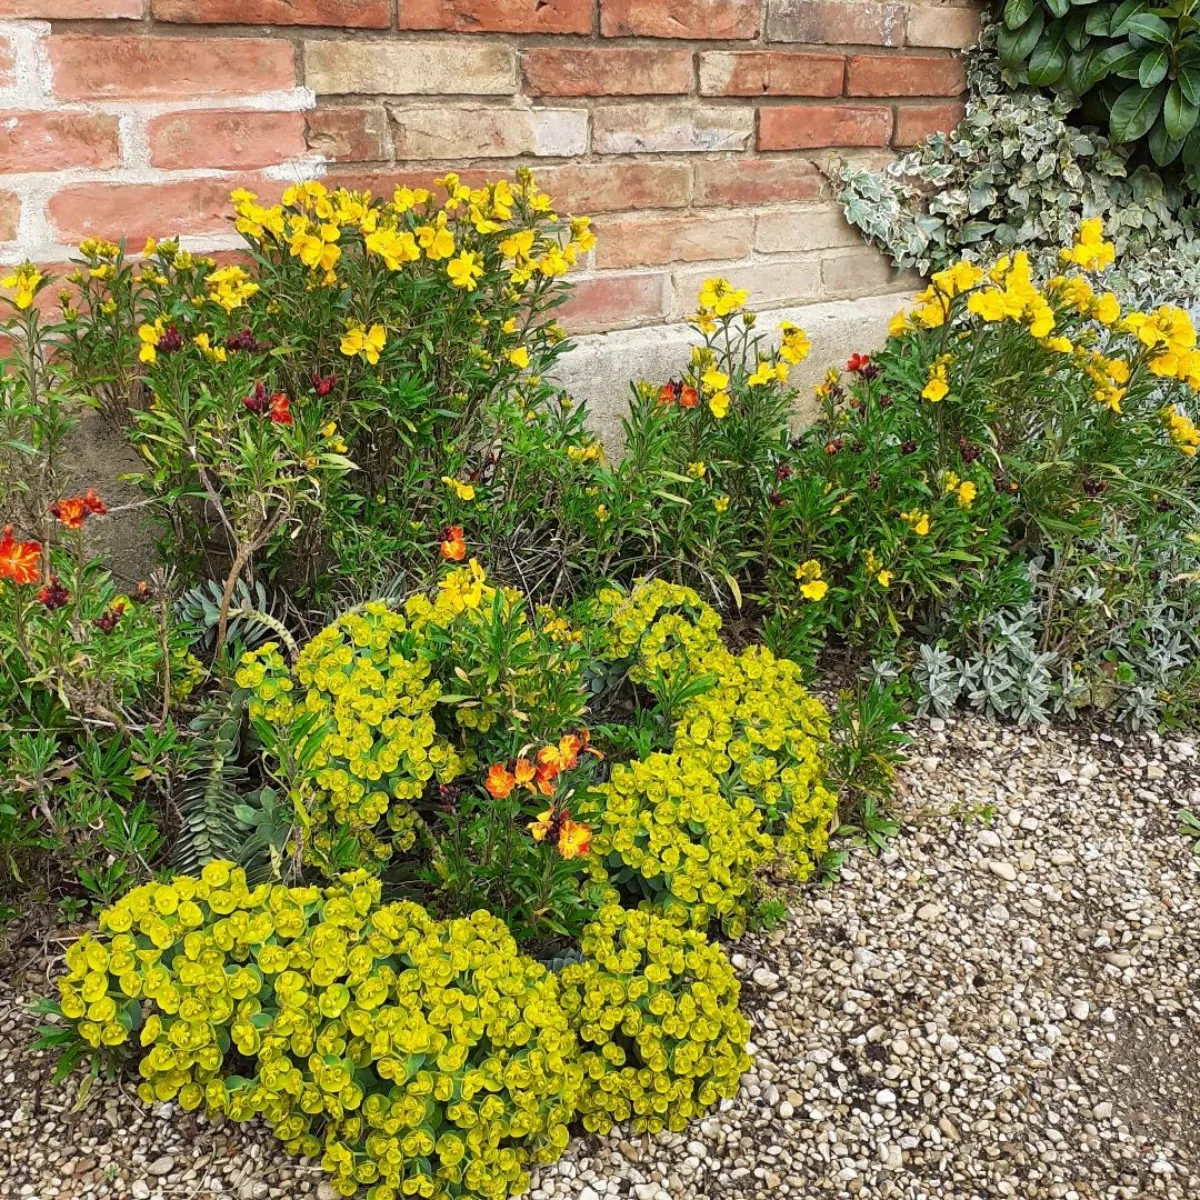 un jardin avec des couvre sol fleurs jaunes plantes vertes mur en briques